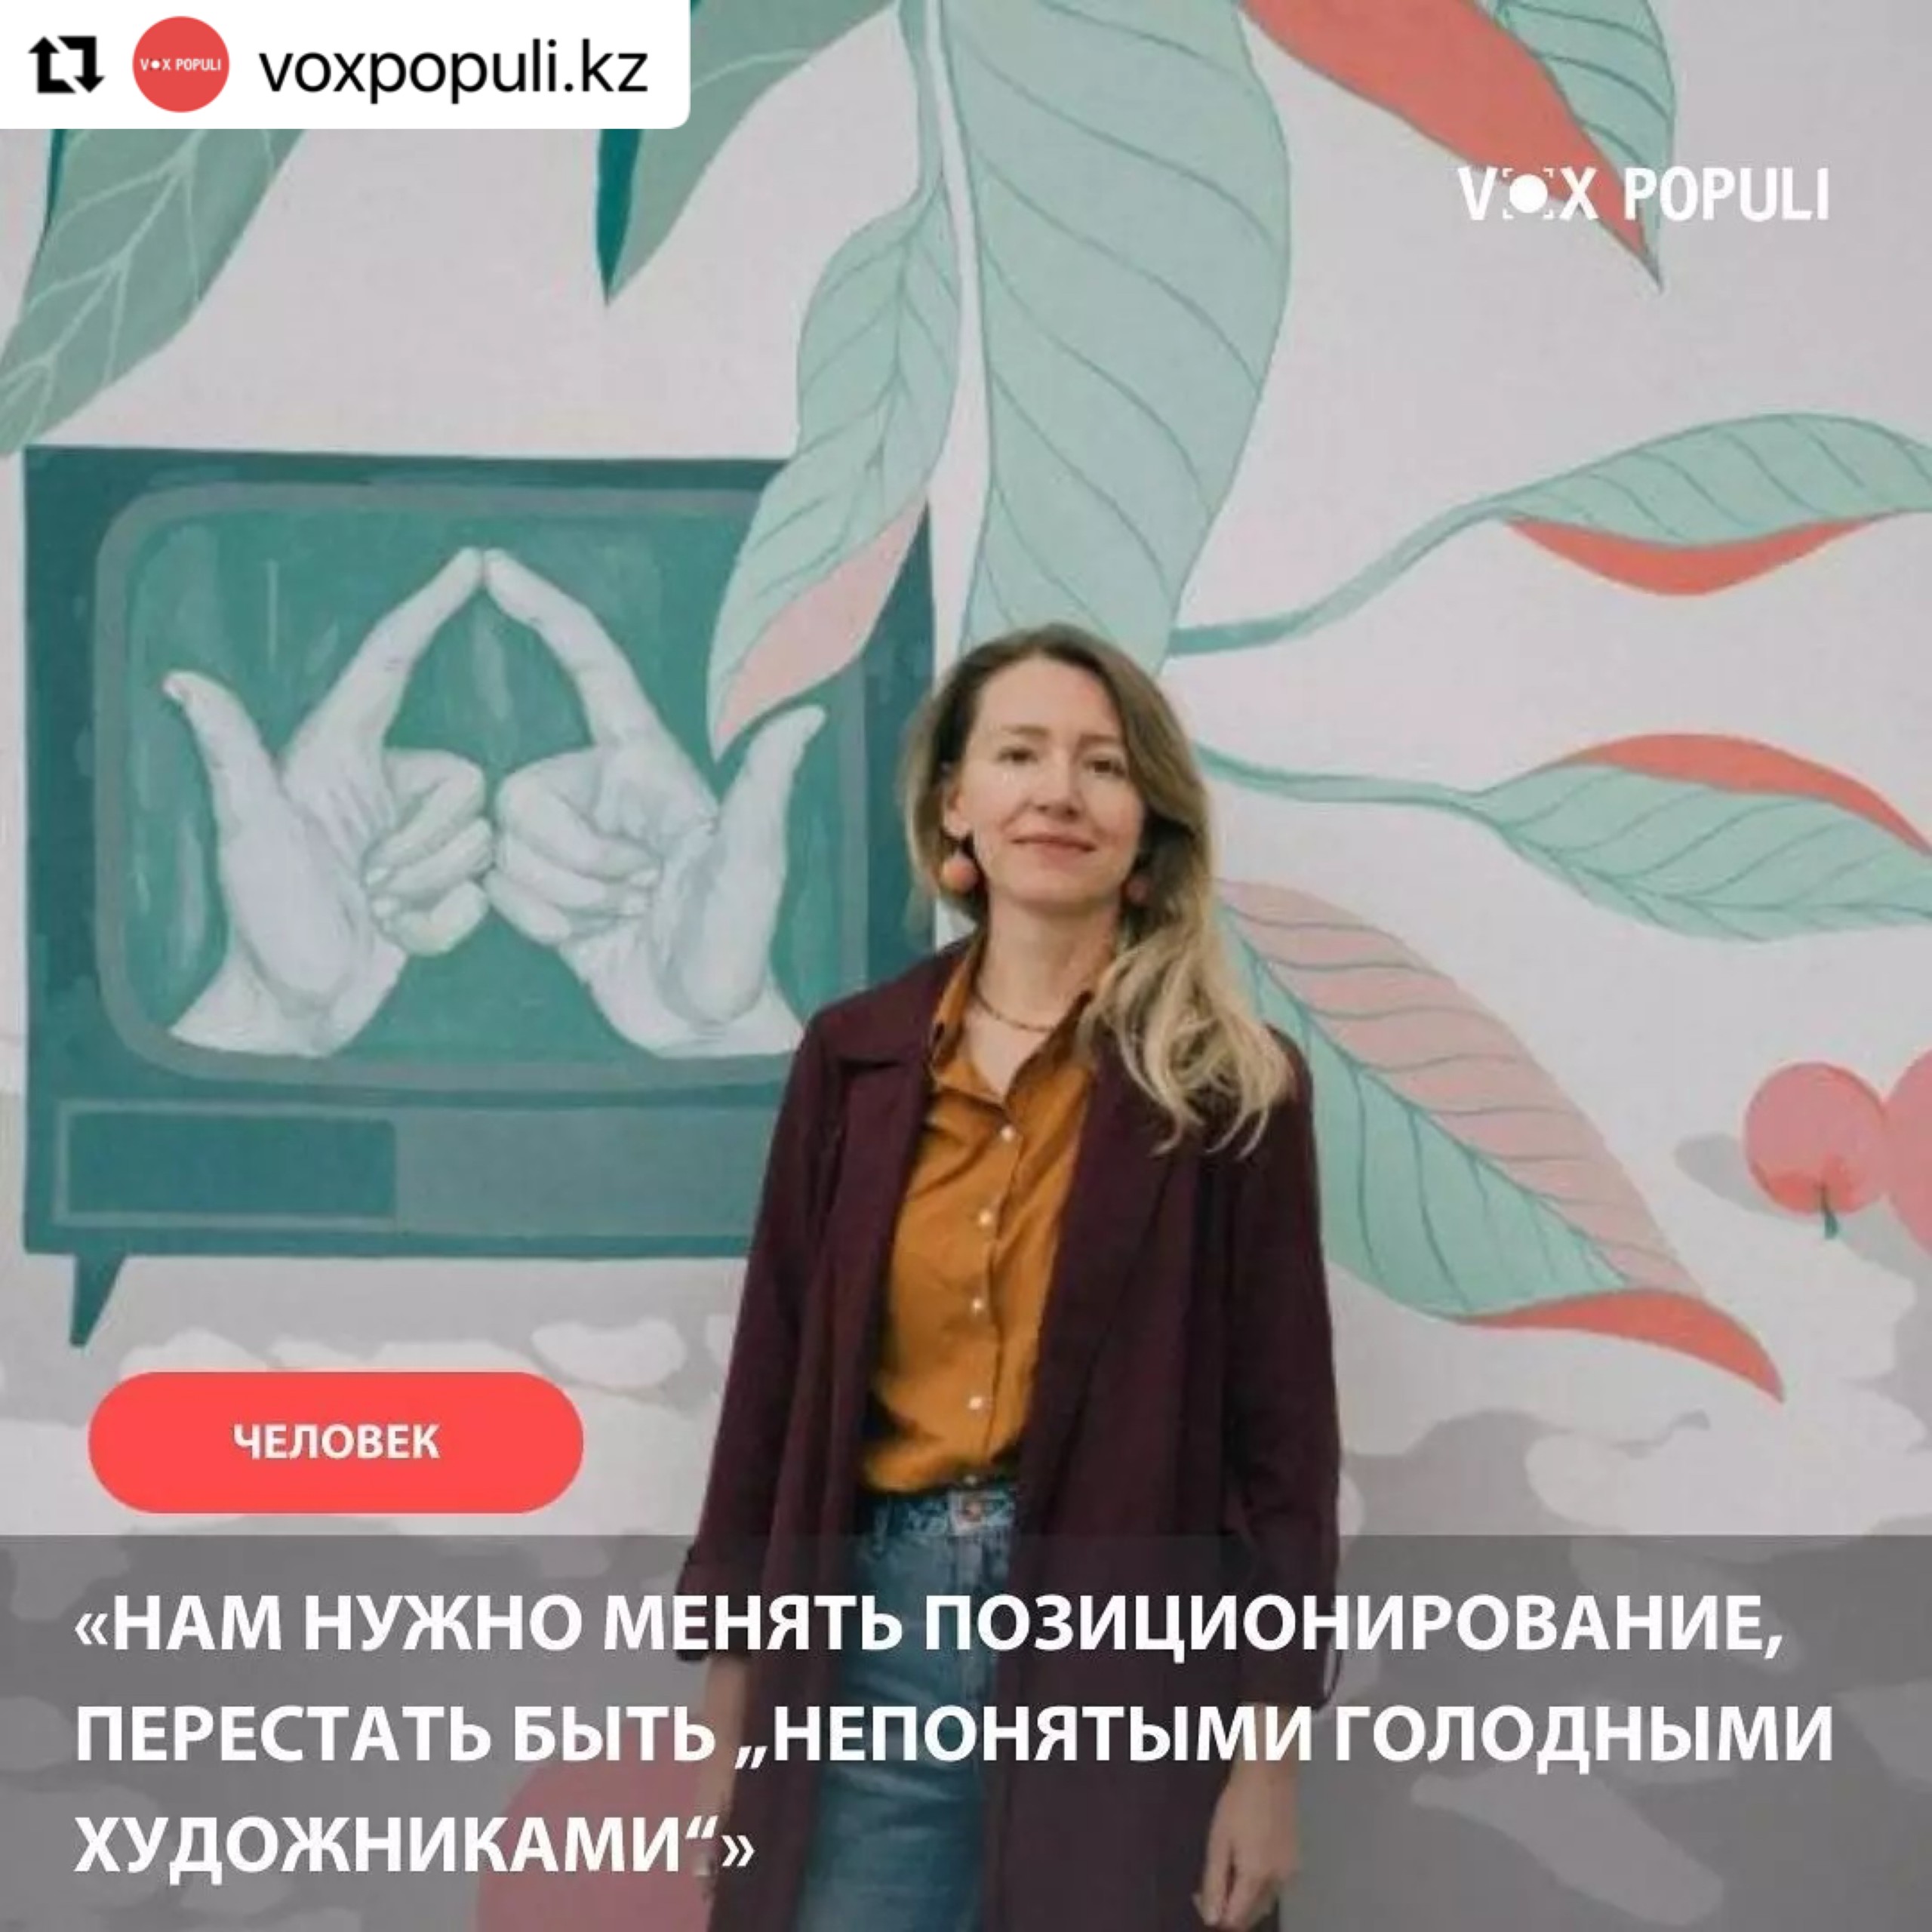 Интервью Галины Корецкой для портала авторской журналистики Vox Populi